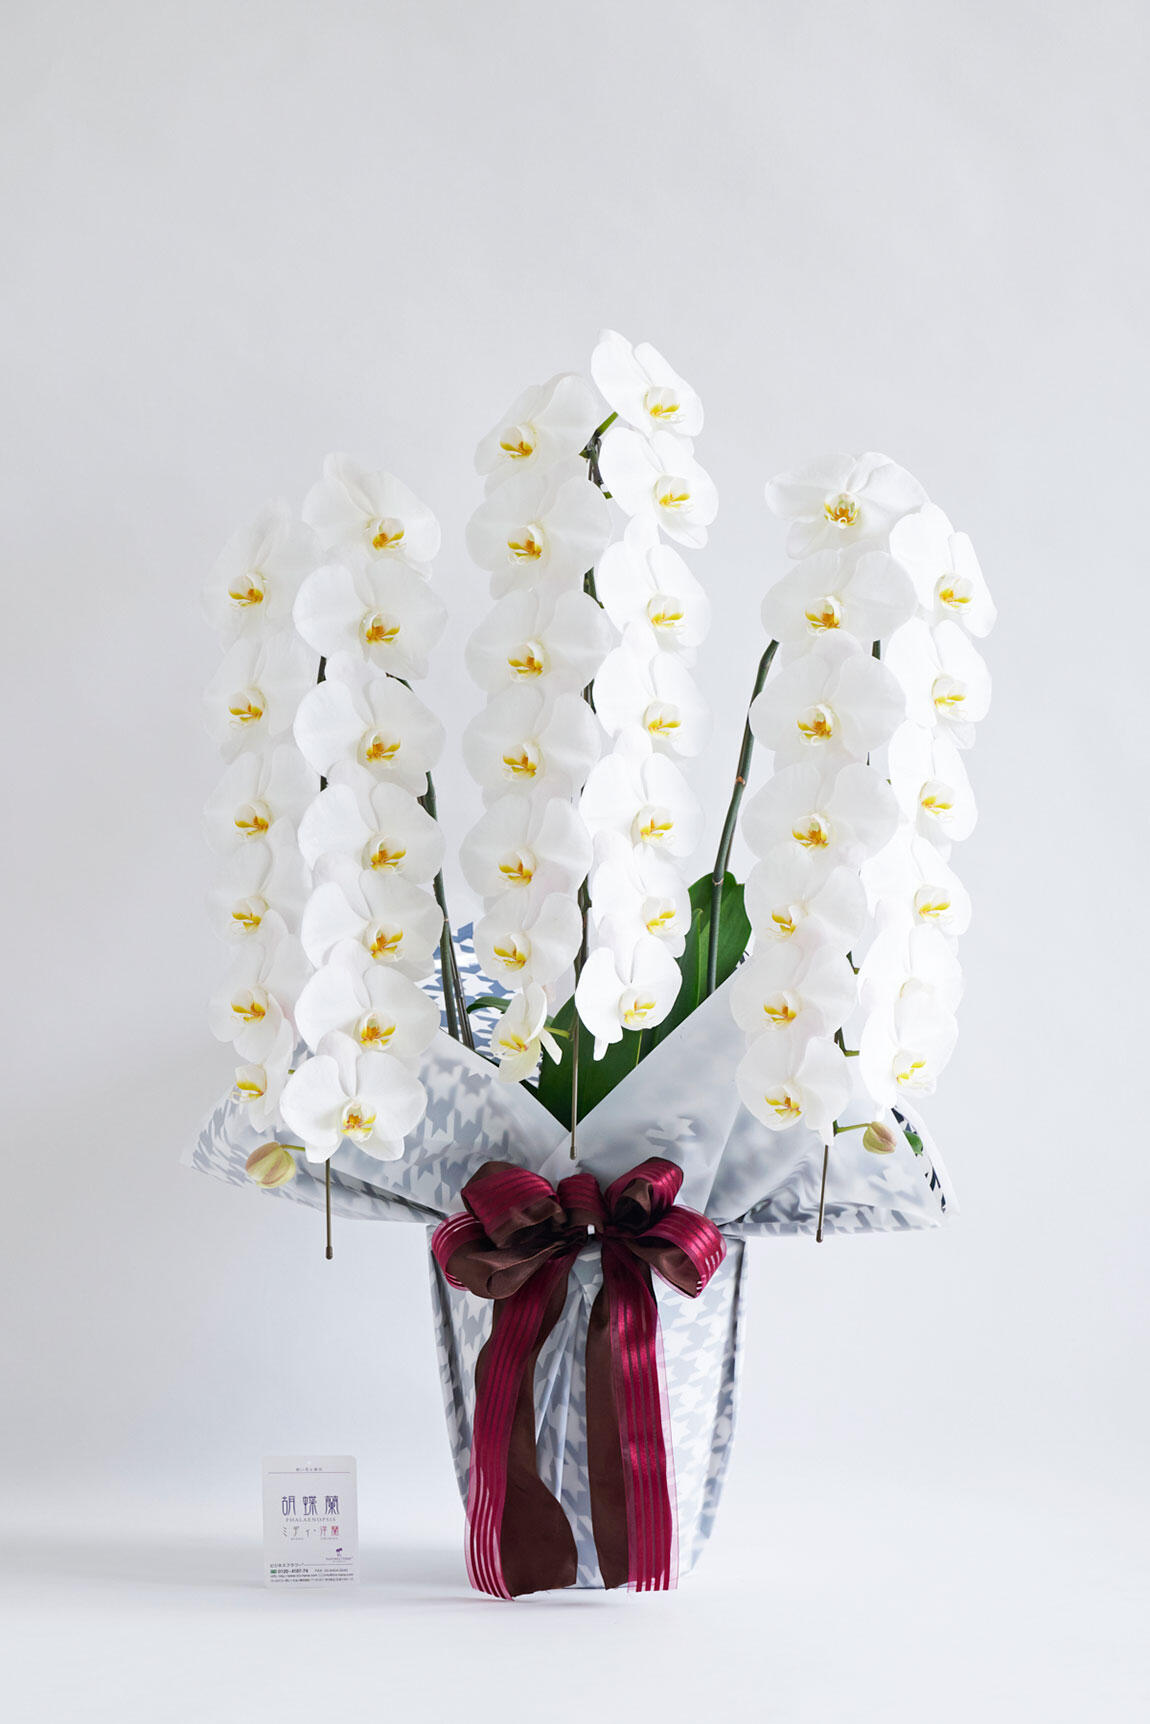 <p>開店祝い、開院祝い、開業祝い、就任祝いなどの定番お祝い花胡蝶蘭にチョットしたお洒落感を施した、こだわりラッピング胡蝶蘭シリーズの商品です。</p>